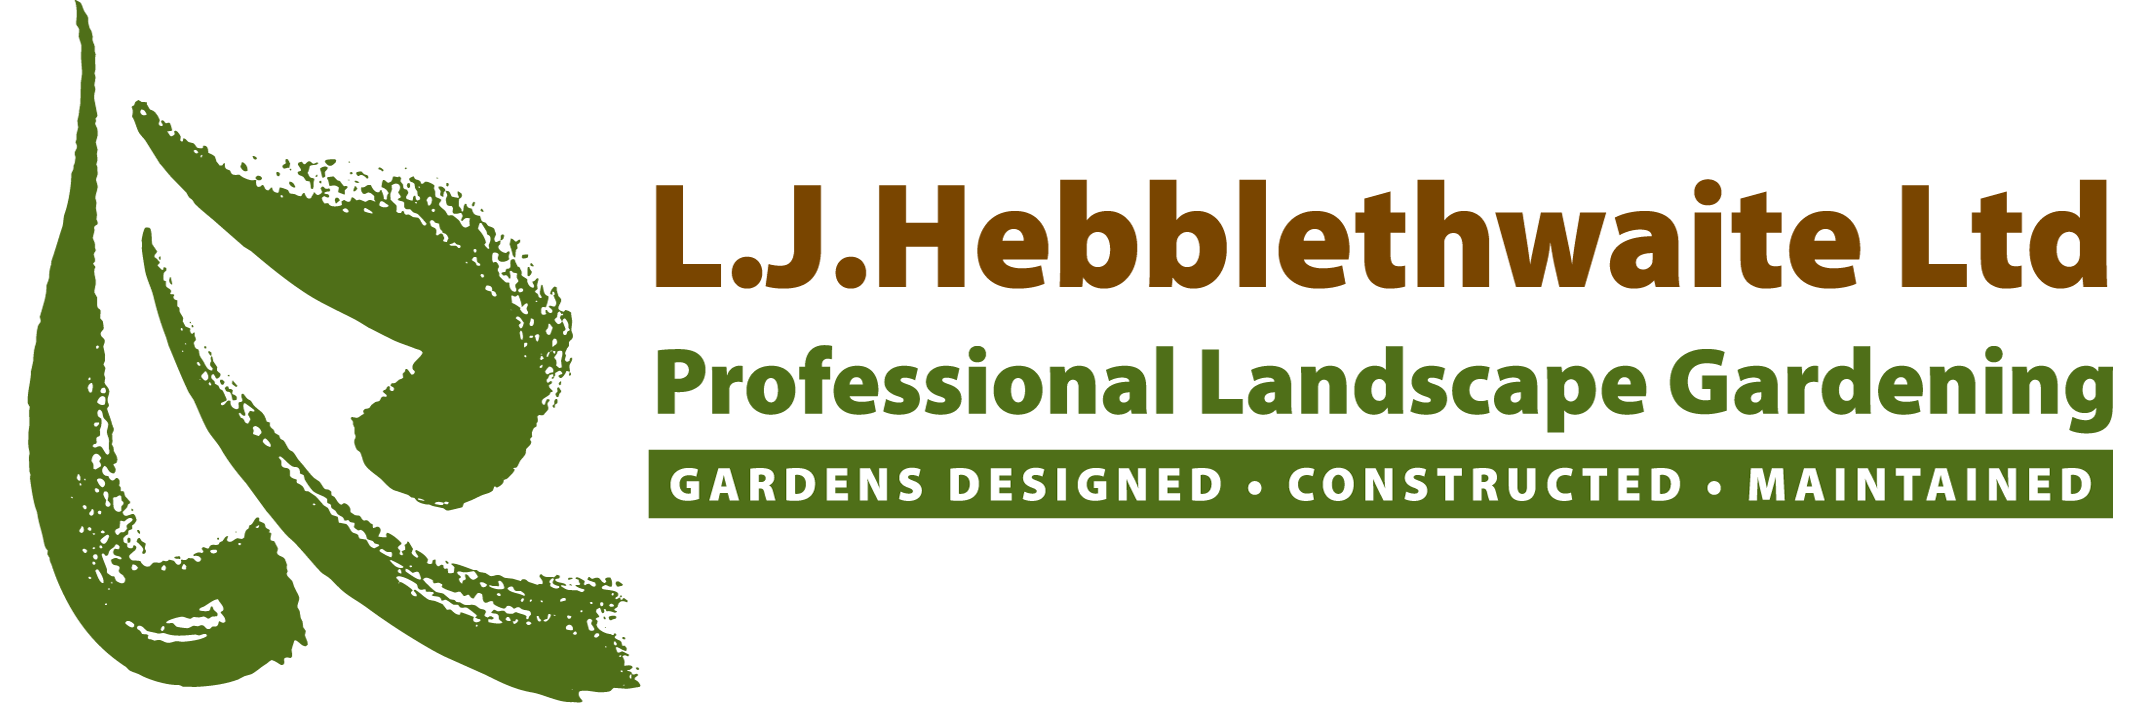 L J Hebblethwaite Ltd